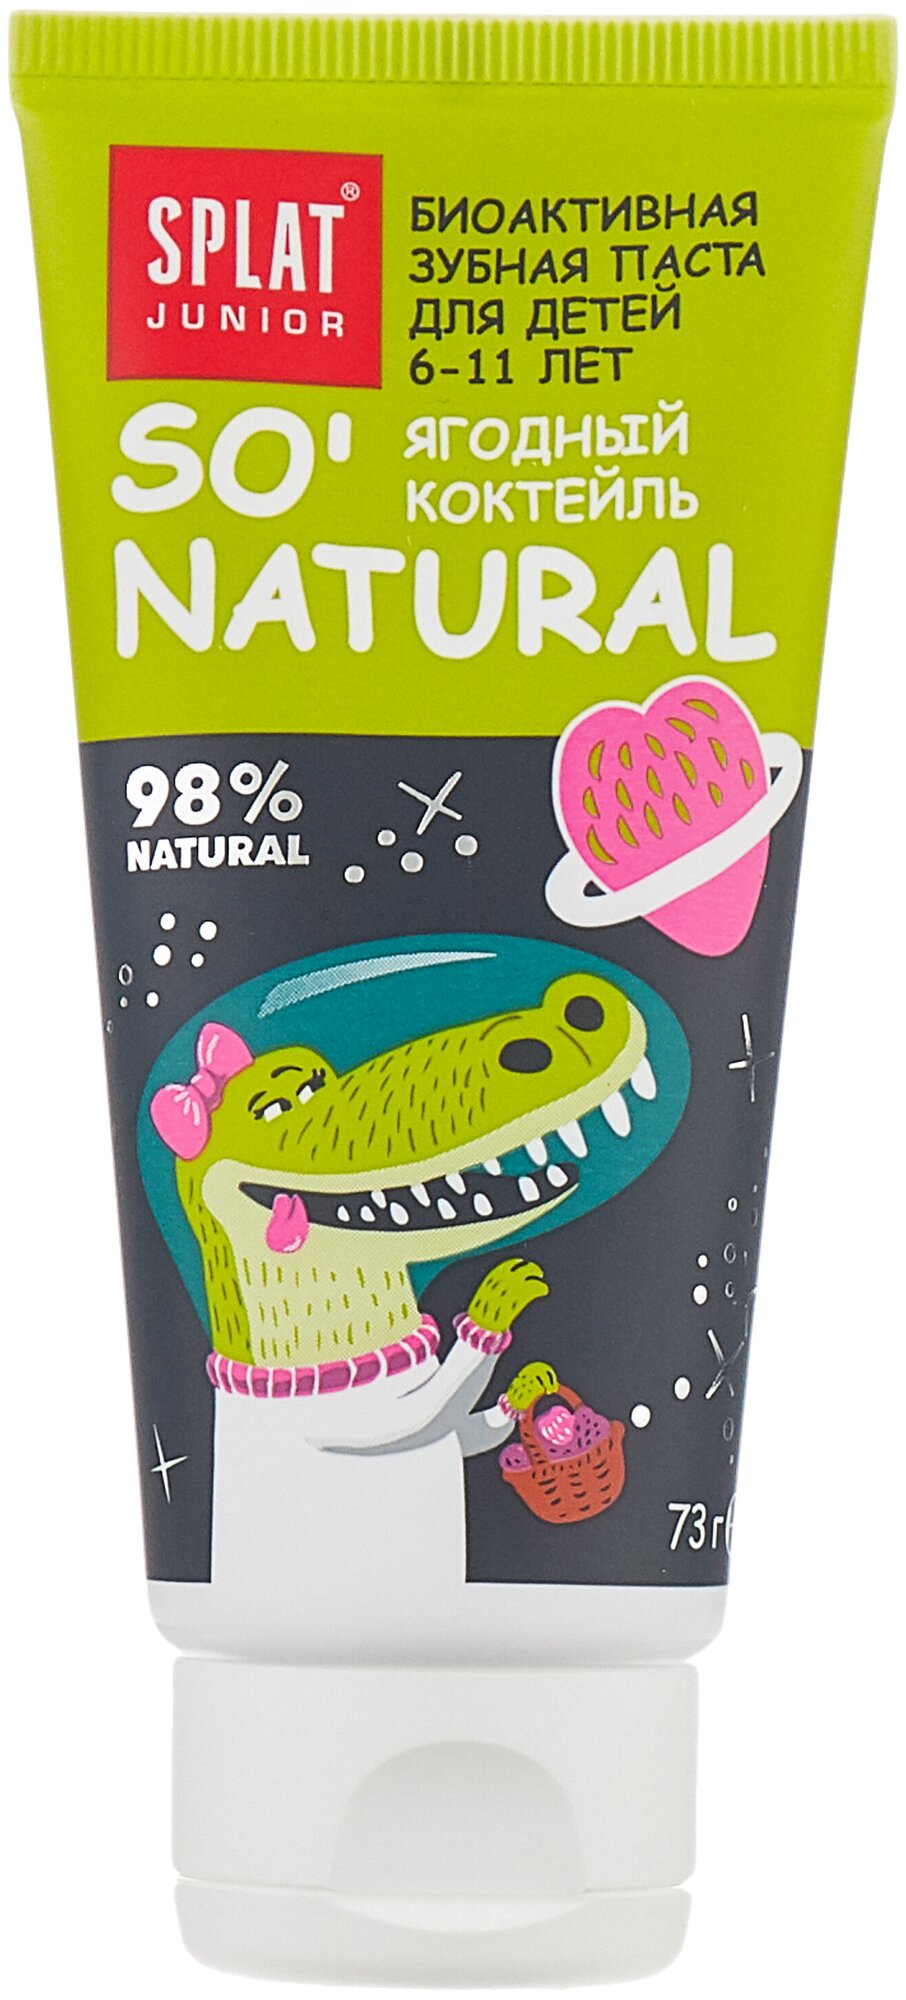 SPLAT Junior Натуральная зубная паста для детей 6-11 лет ягодный коктейль, 73 г.